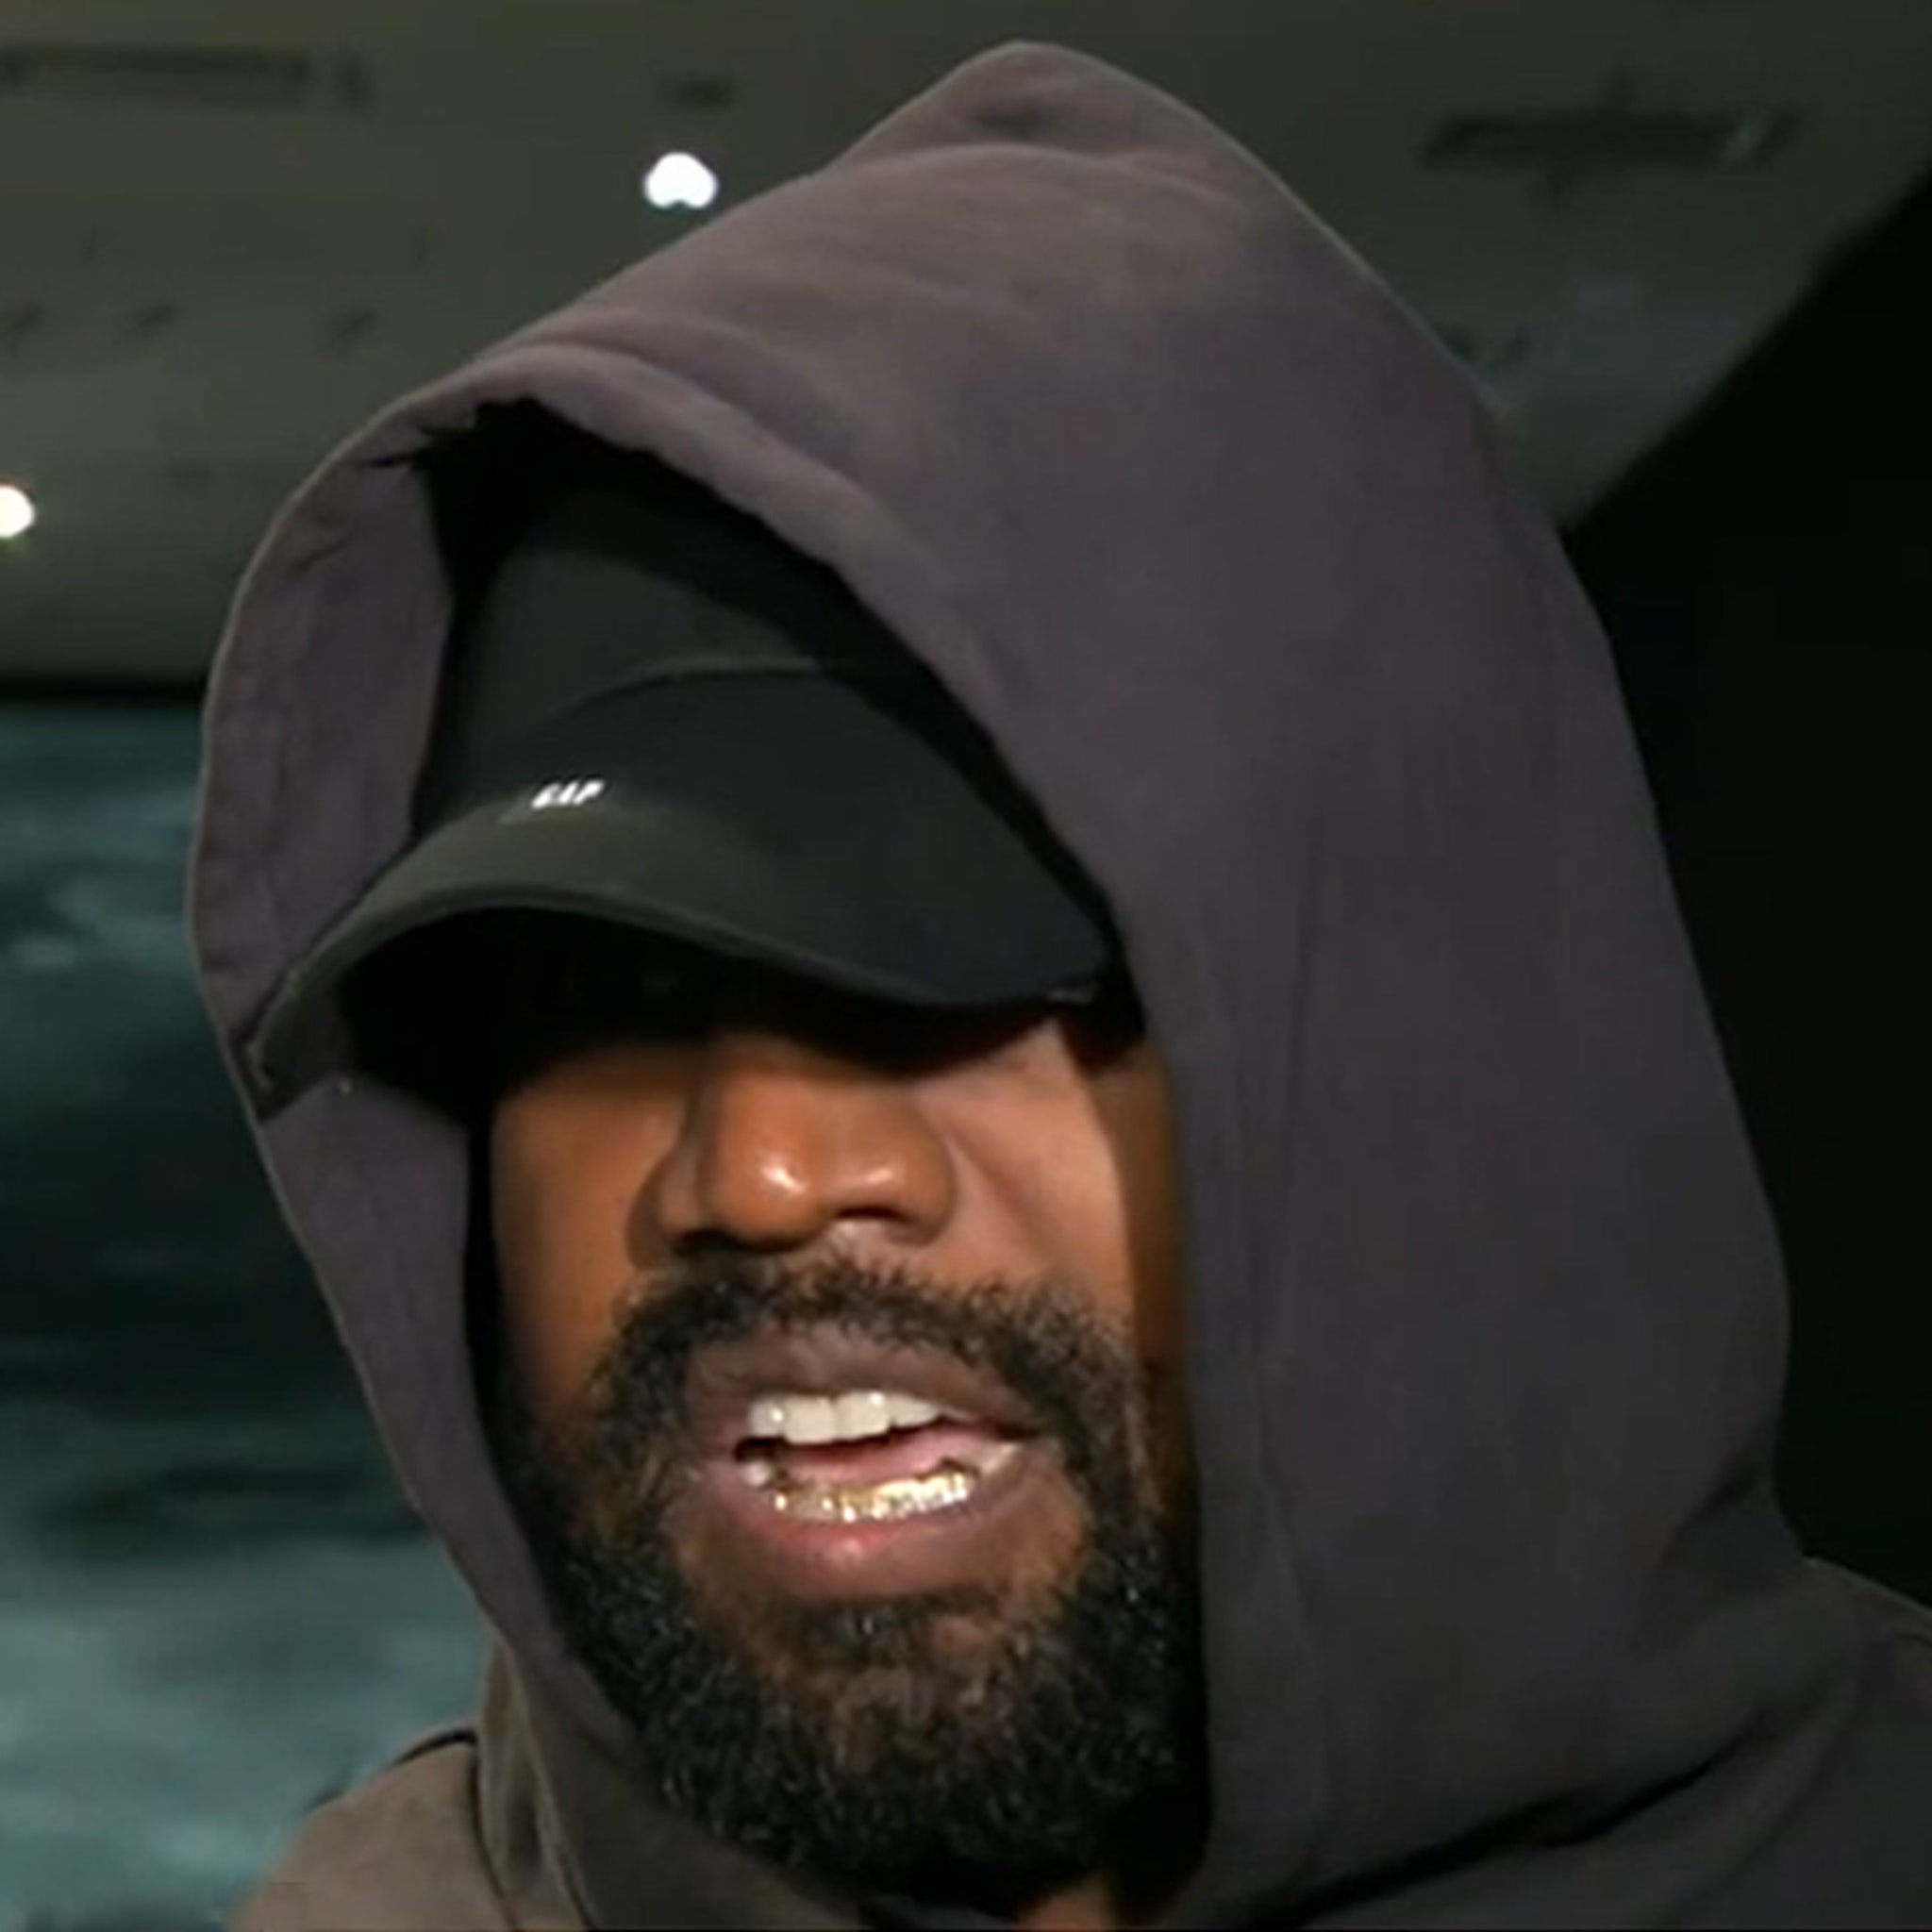 Kanye West defends Yeezy Gap trash bags: 'I'm an innovator